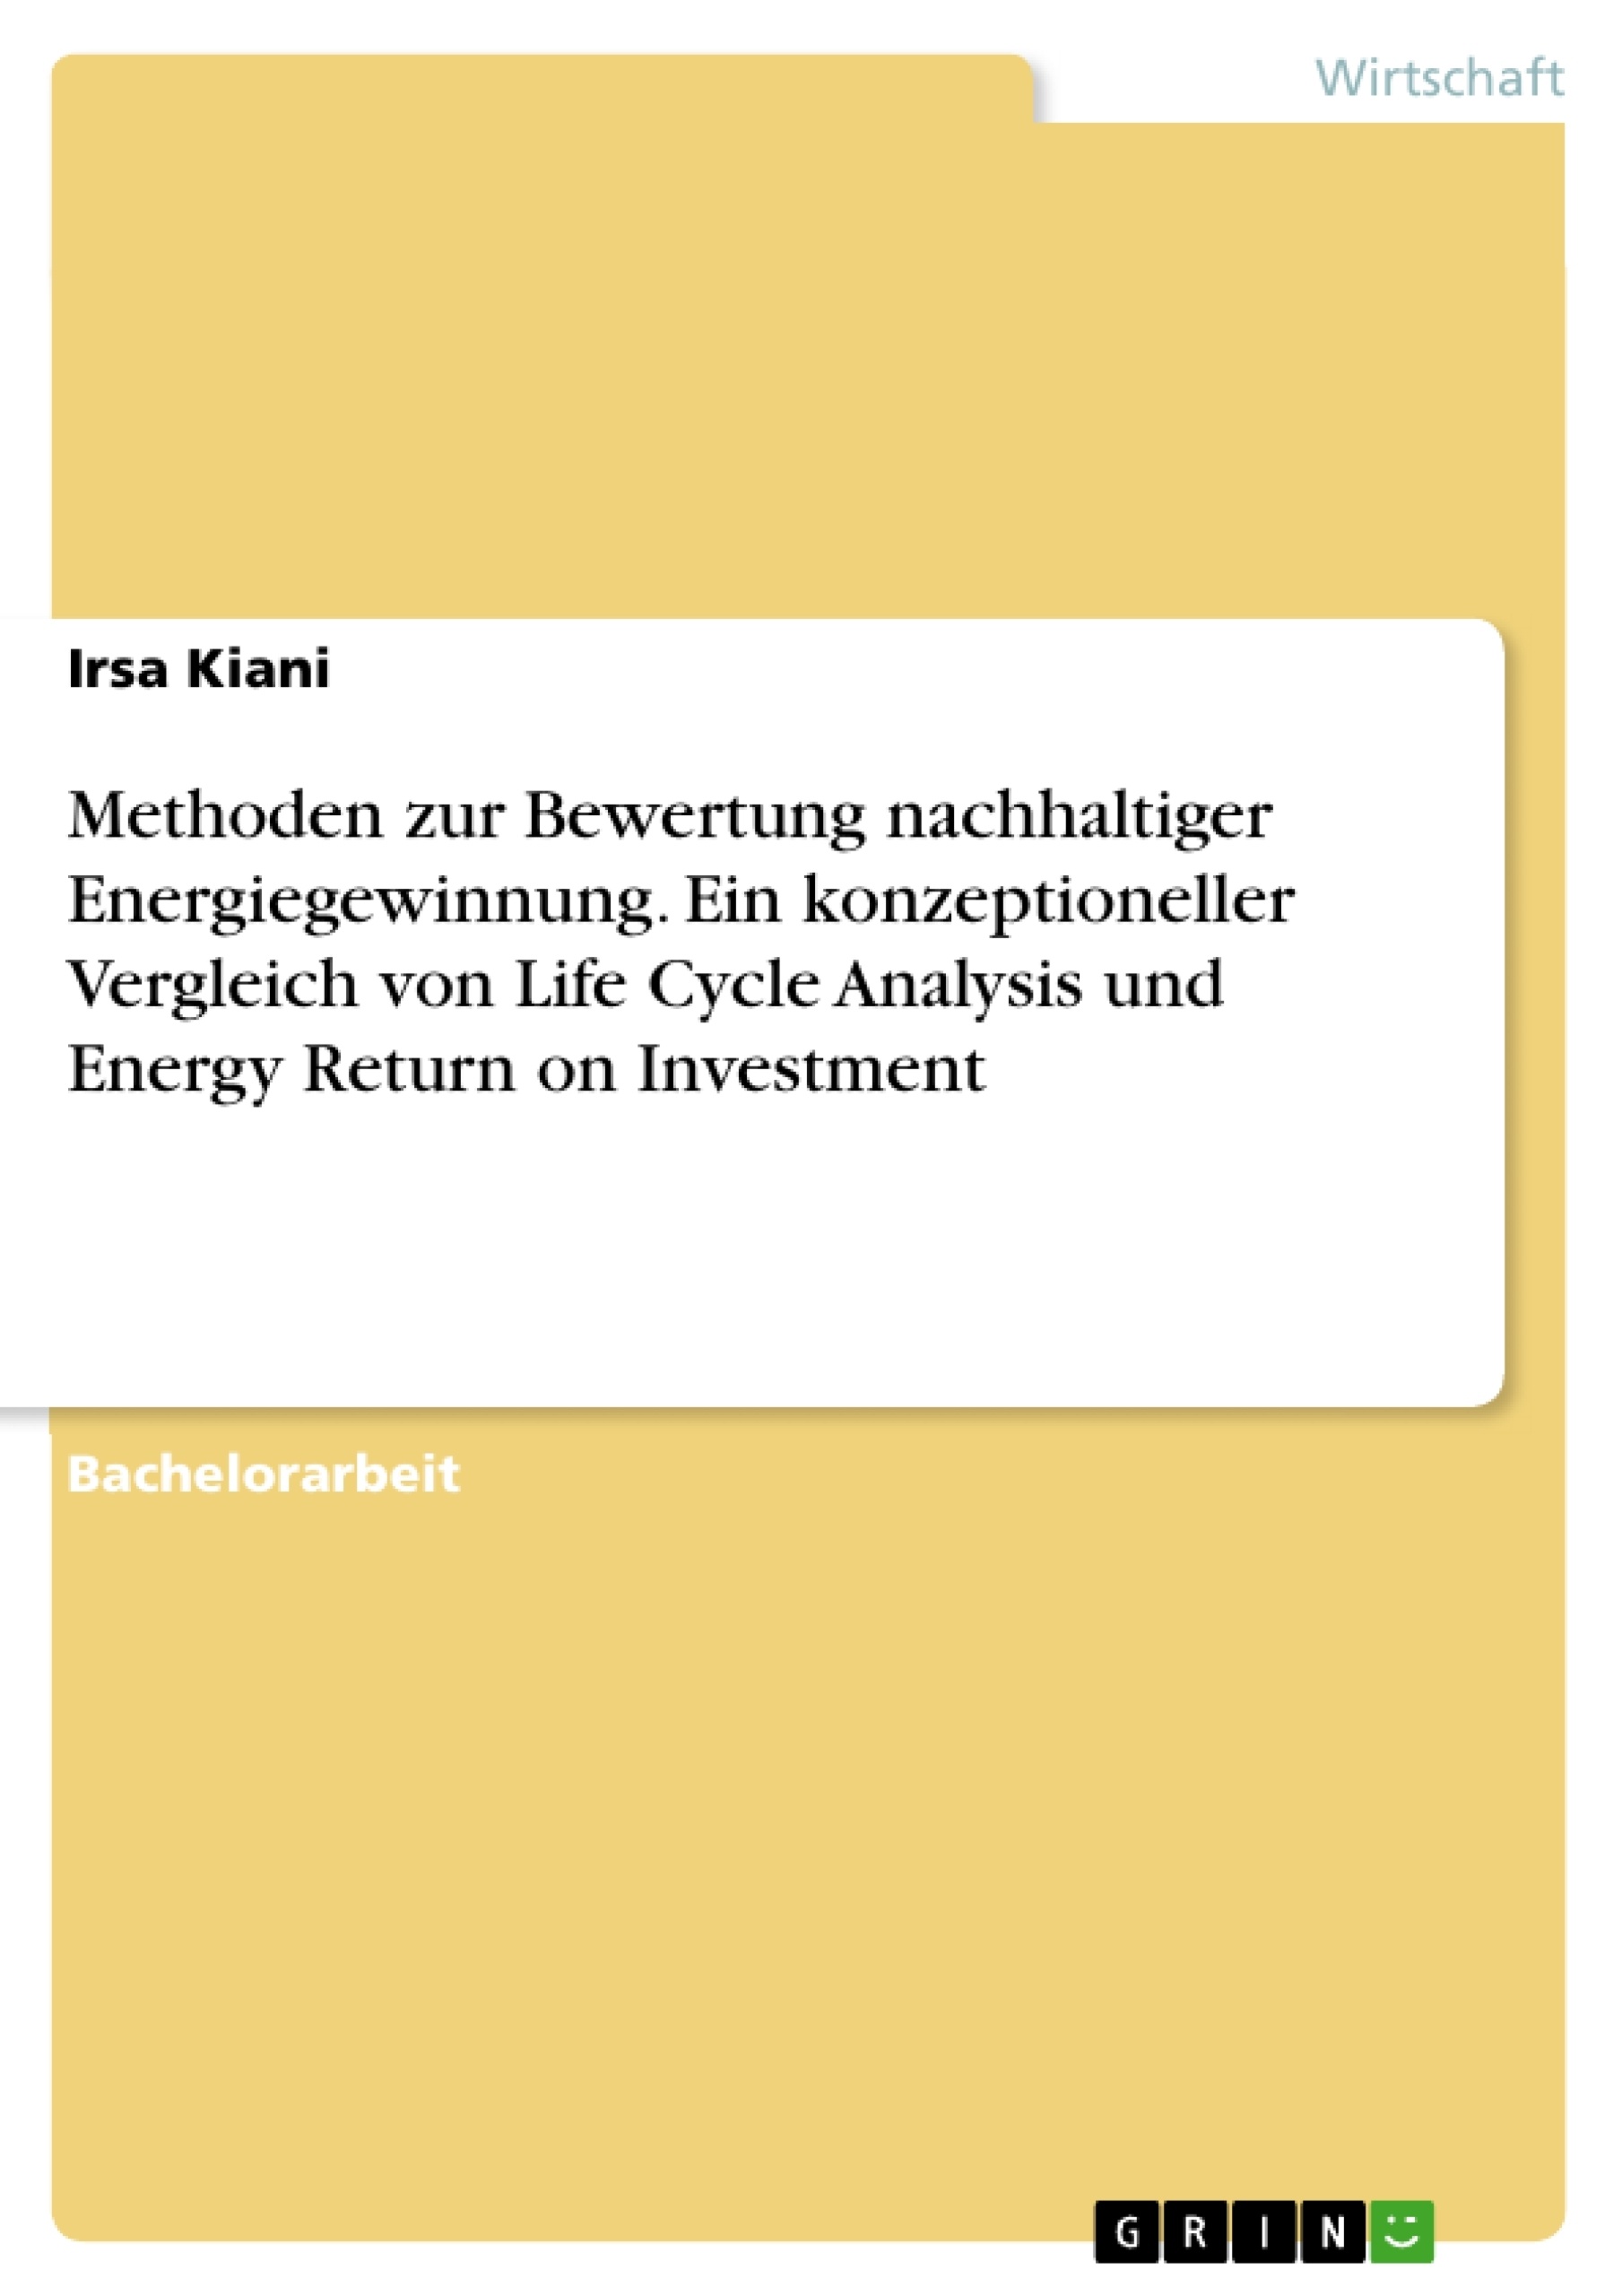 Titel: Methoden zur Bewertung nachhaltiger Energiegewinnung. Ein konzeptioneller Vergleich von Life Cycle Analysis und Energy Return on Investment